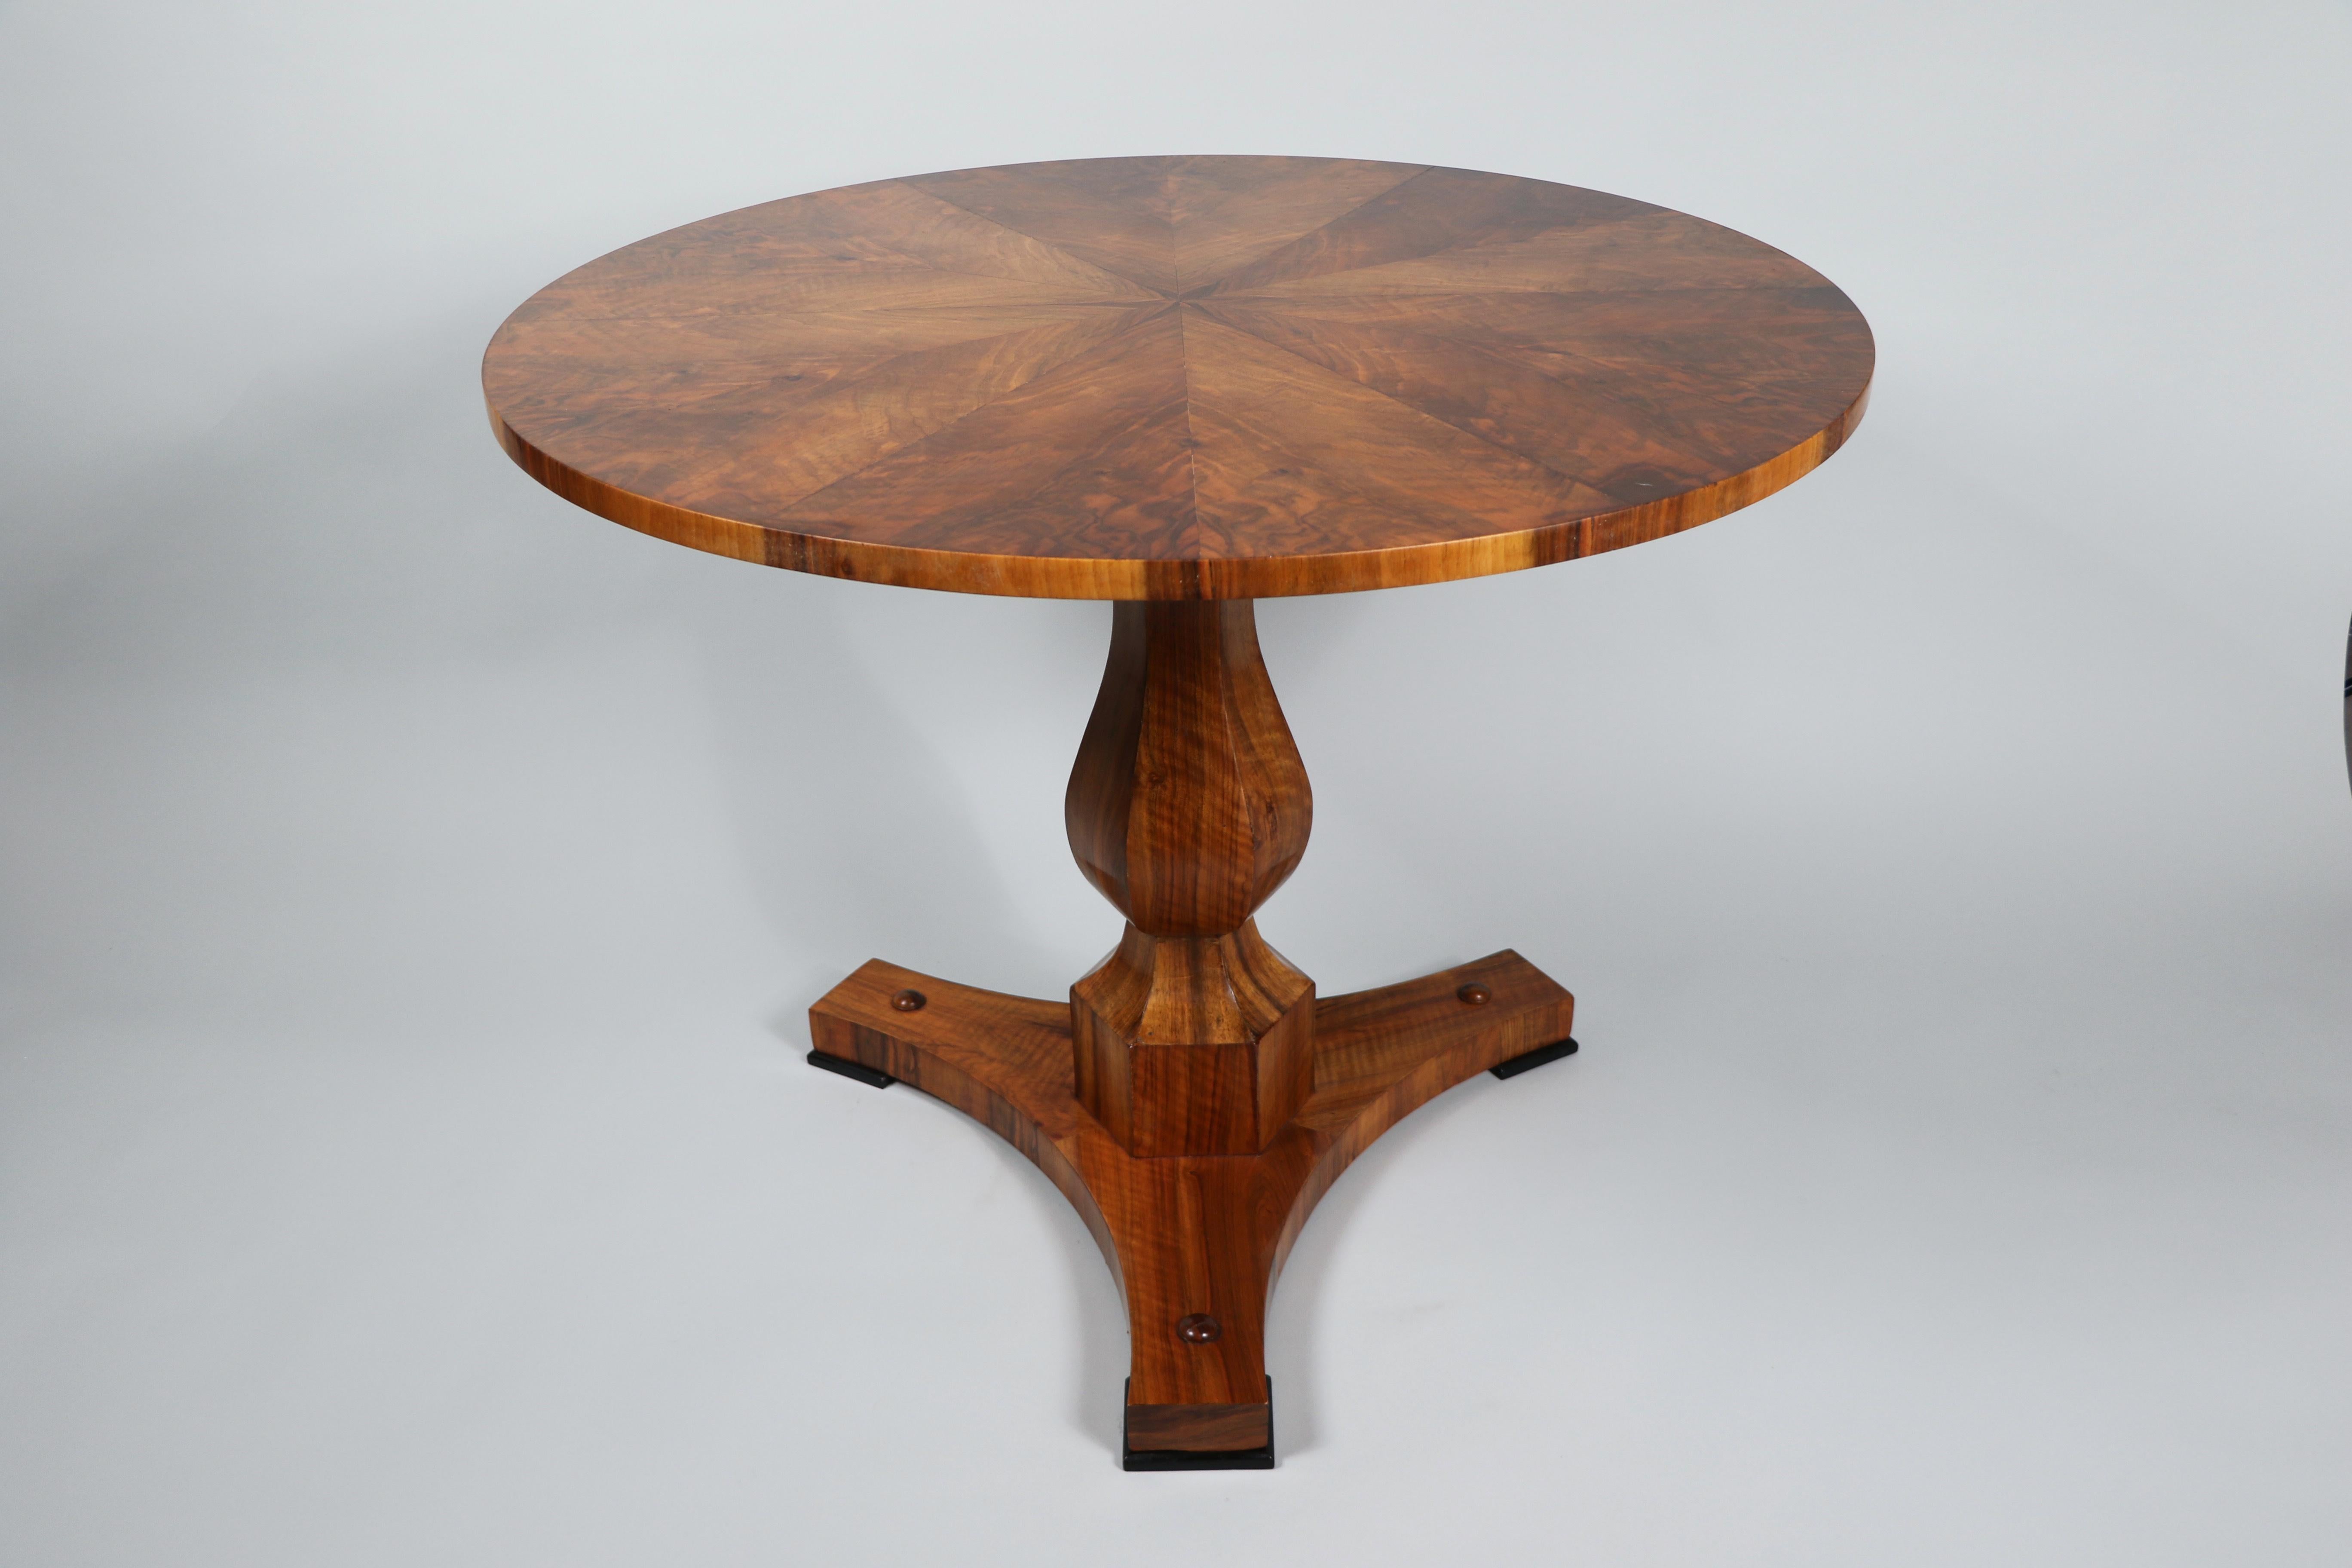 Hallo,
Dieser feine Biedermeier-Sockeltisch aus Nussbaumholz ist das beste Beispiel für ein hochwertiges Wiener Stück aus der Zeit um 1830.

Das Wiener Biedermeier zeichnet sich durch seine raffinierten Proportionen, sein seltenes und raffiniertes